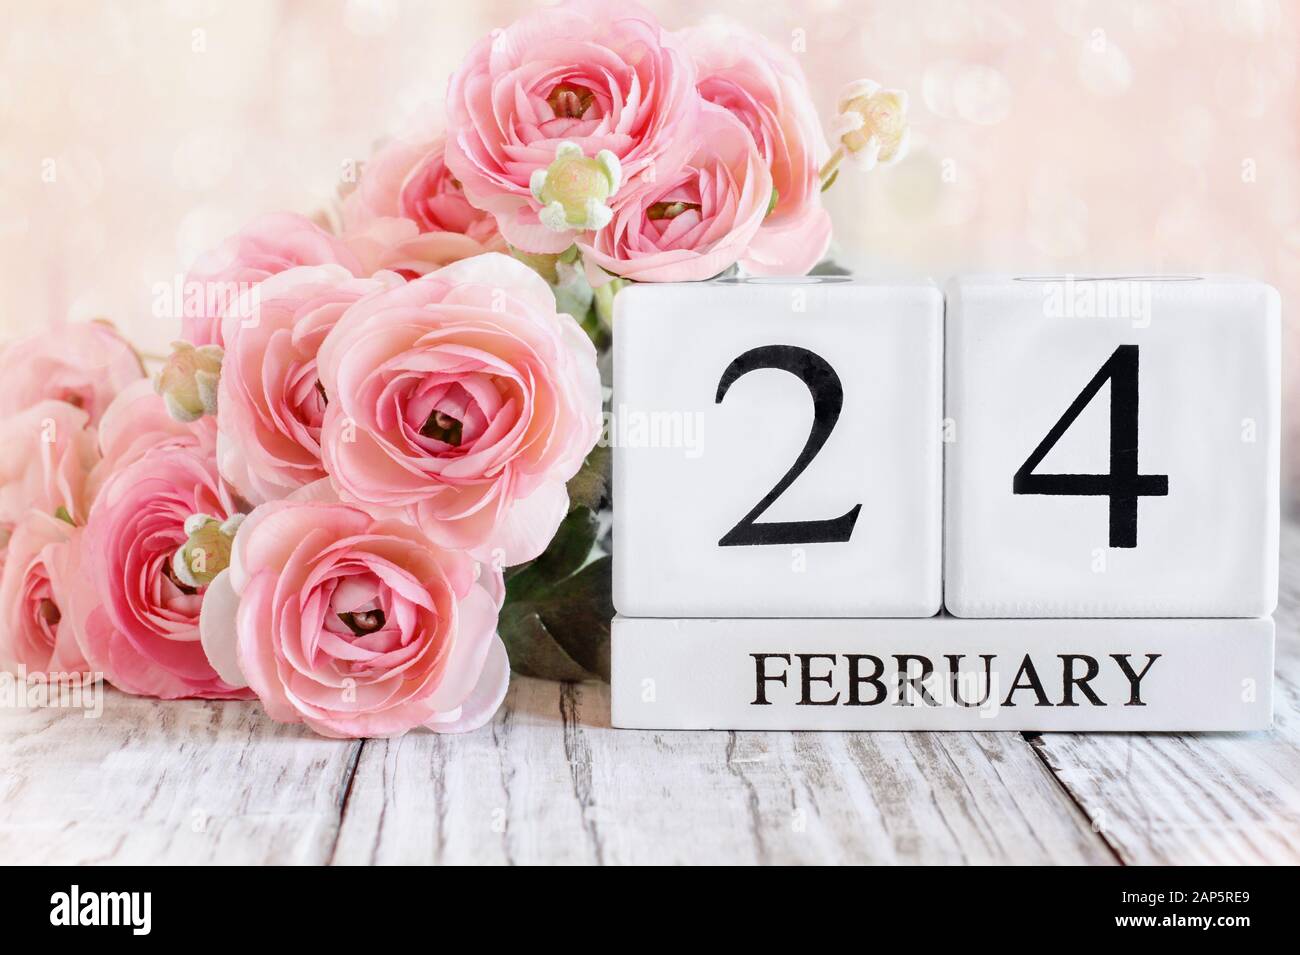 Blocs calendrier en bois blanc avec la date du 24 février et fleurs roses de ranunculus sur une table en bois. Mise au point sélective avec arrière-plan flou. Banque D'Images